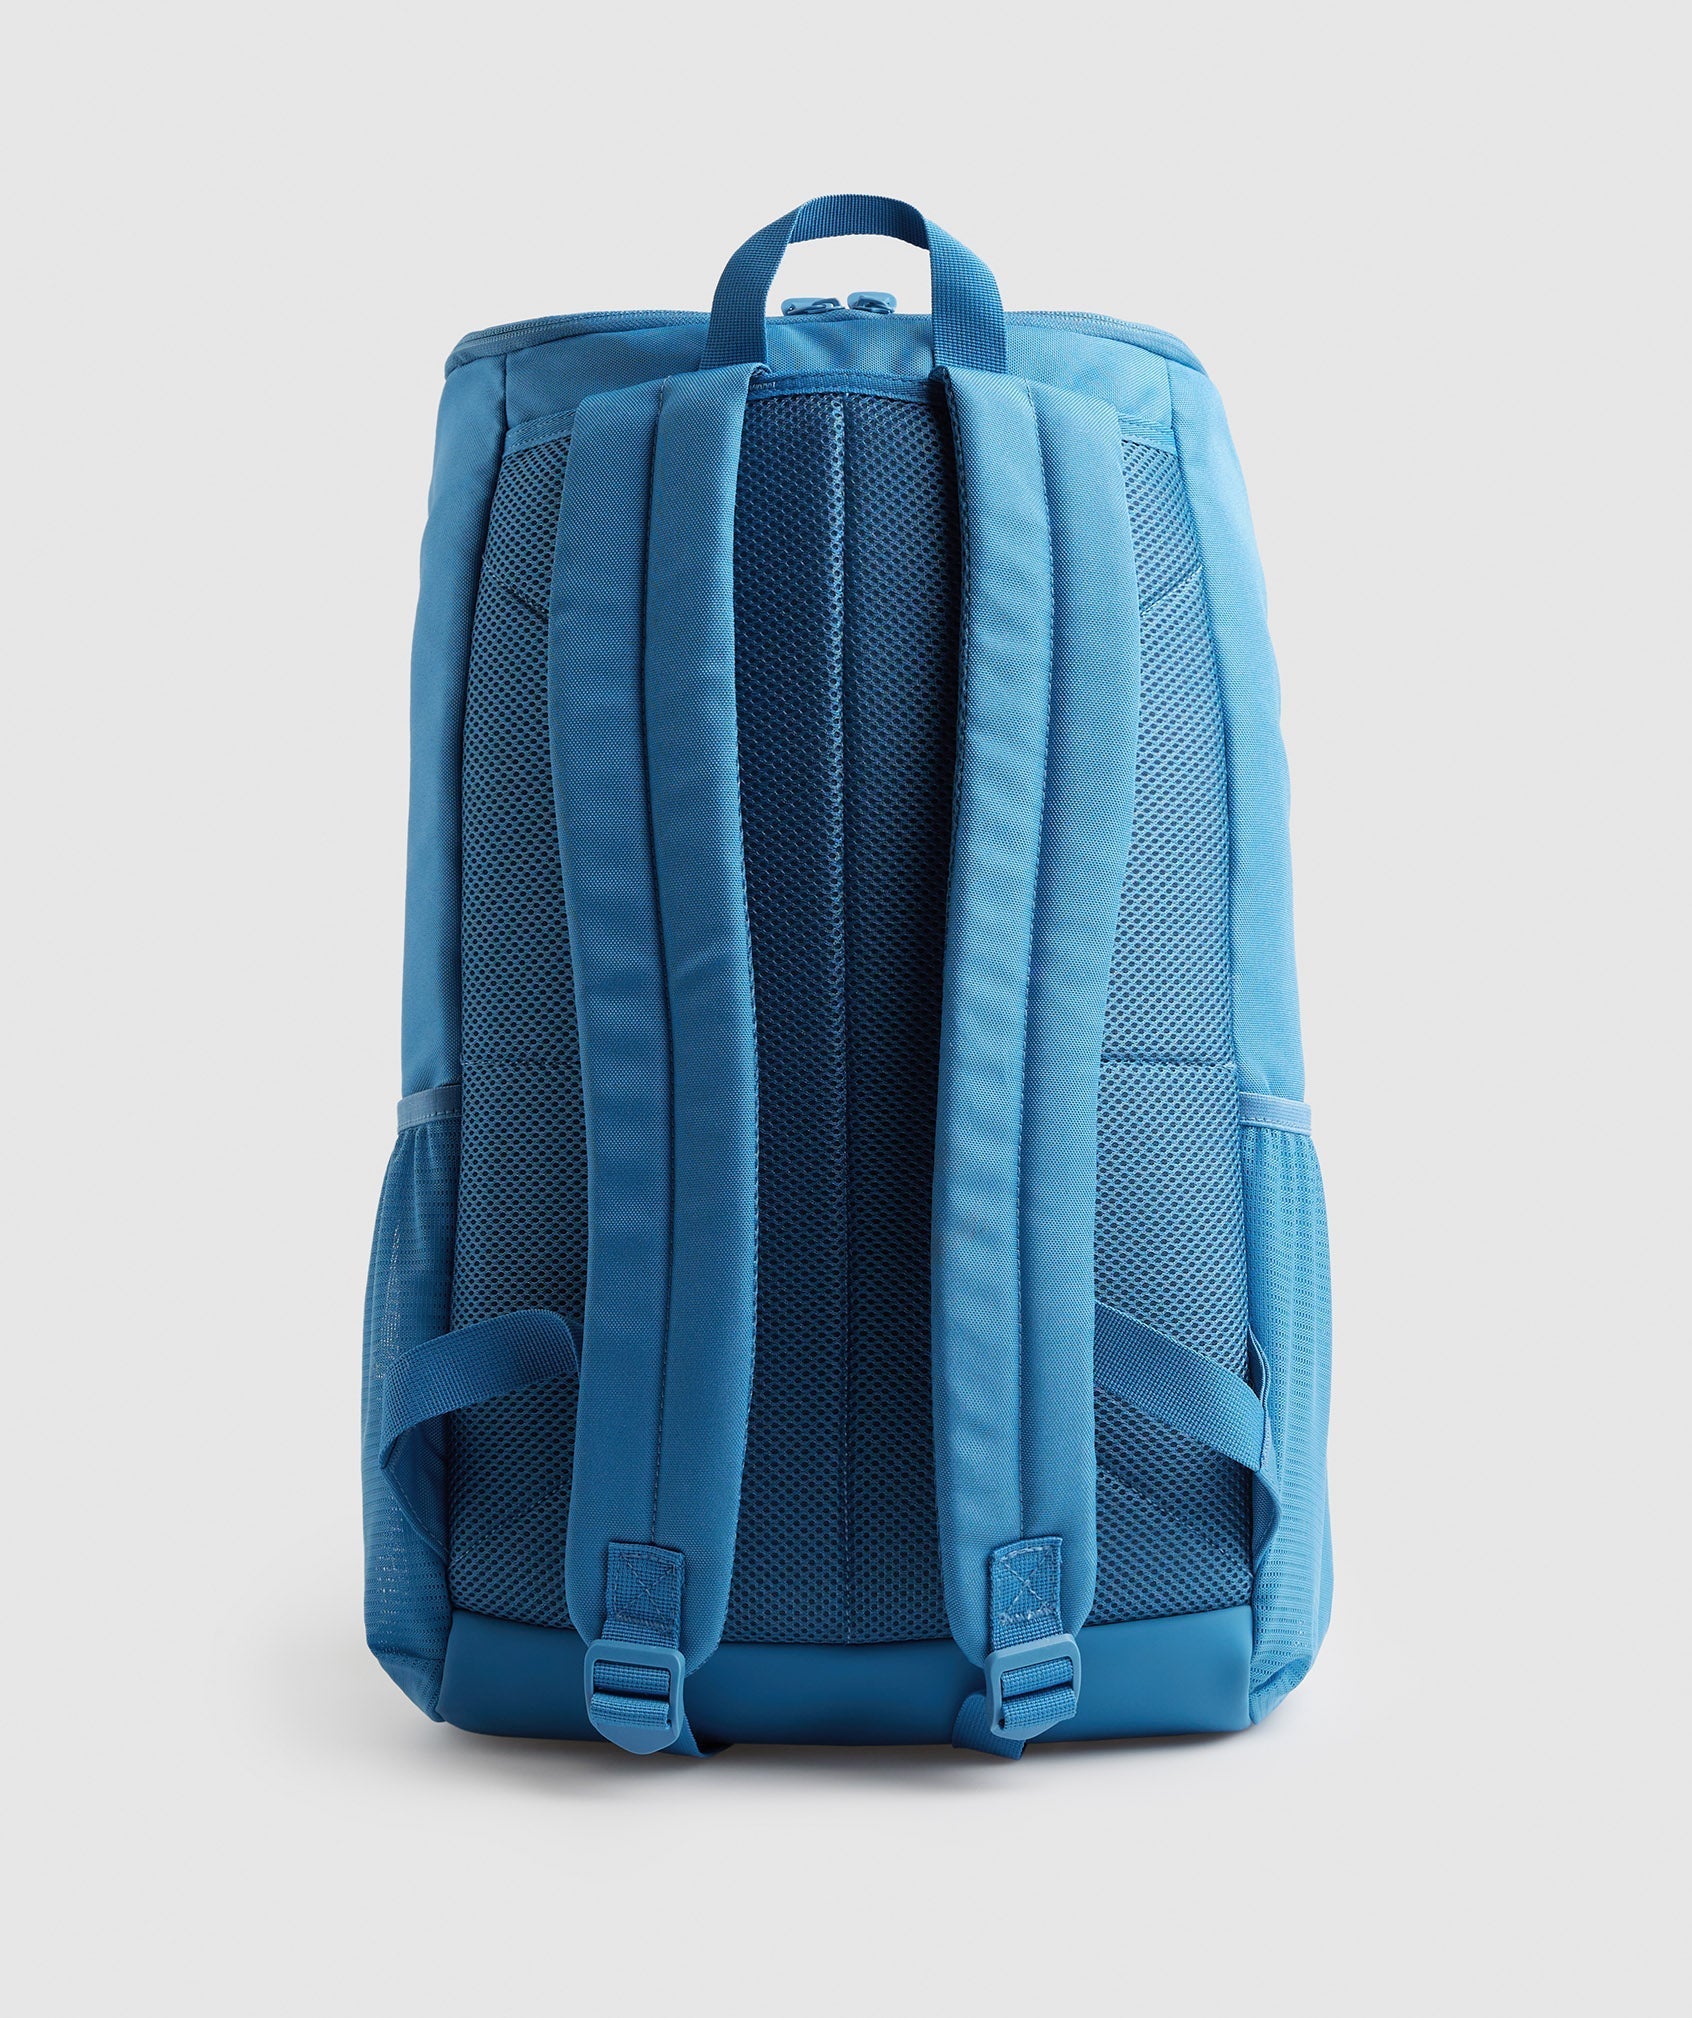 Sharkhead Backpack in Coastal Blue